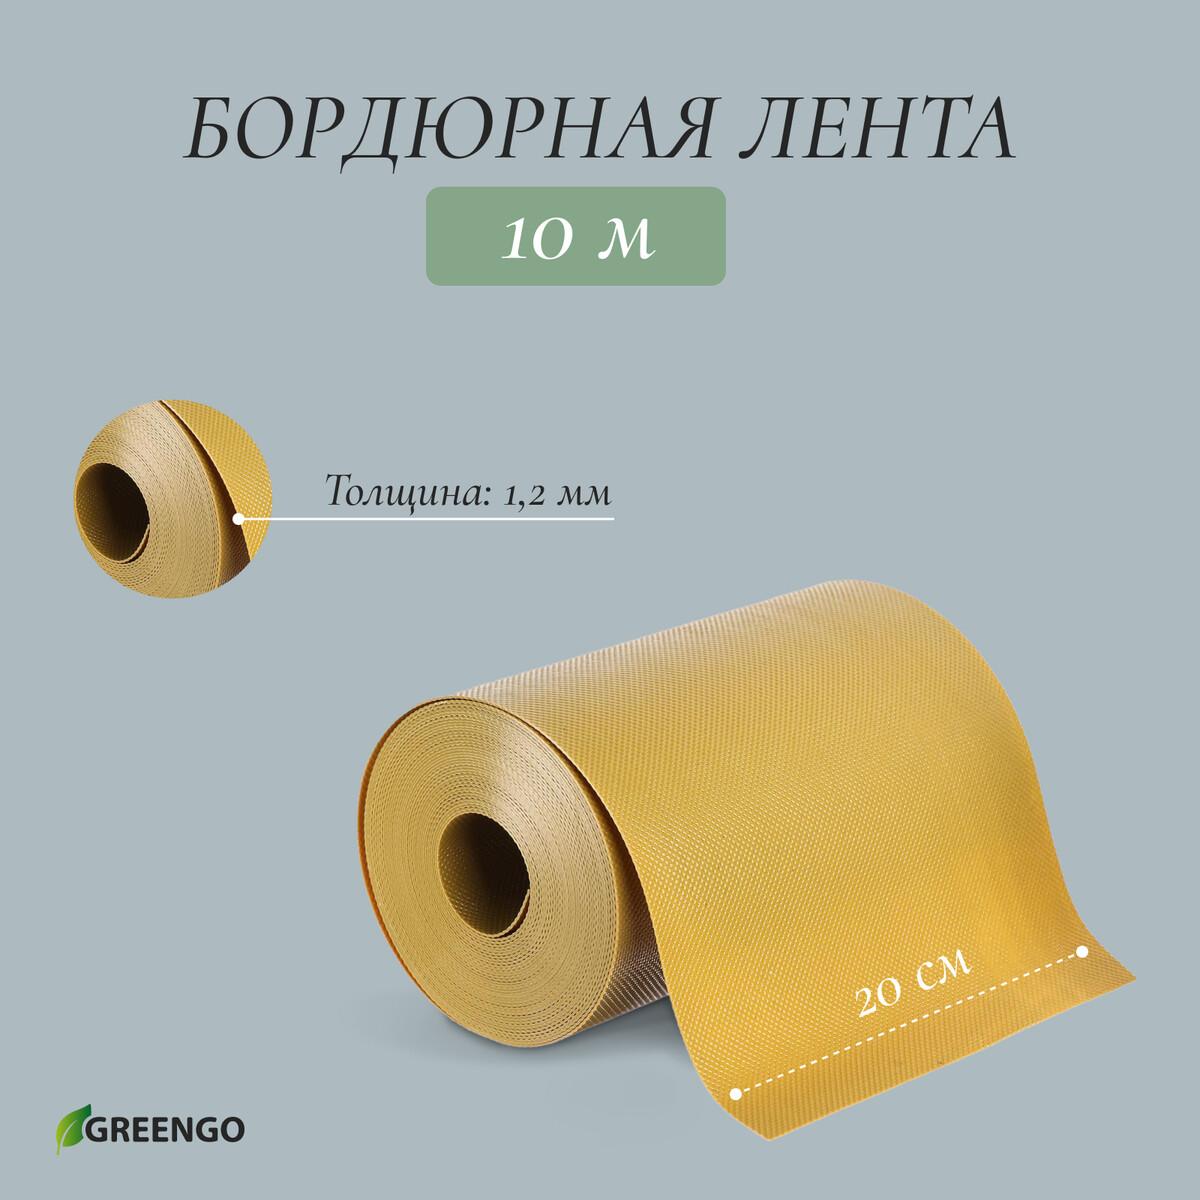 Лента бордюрная, 0.2 × 10 м, толщина 1.2 мм, пластиковая, желтая, greengo подставка для книг пластиковая желтая